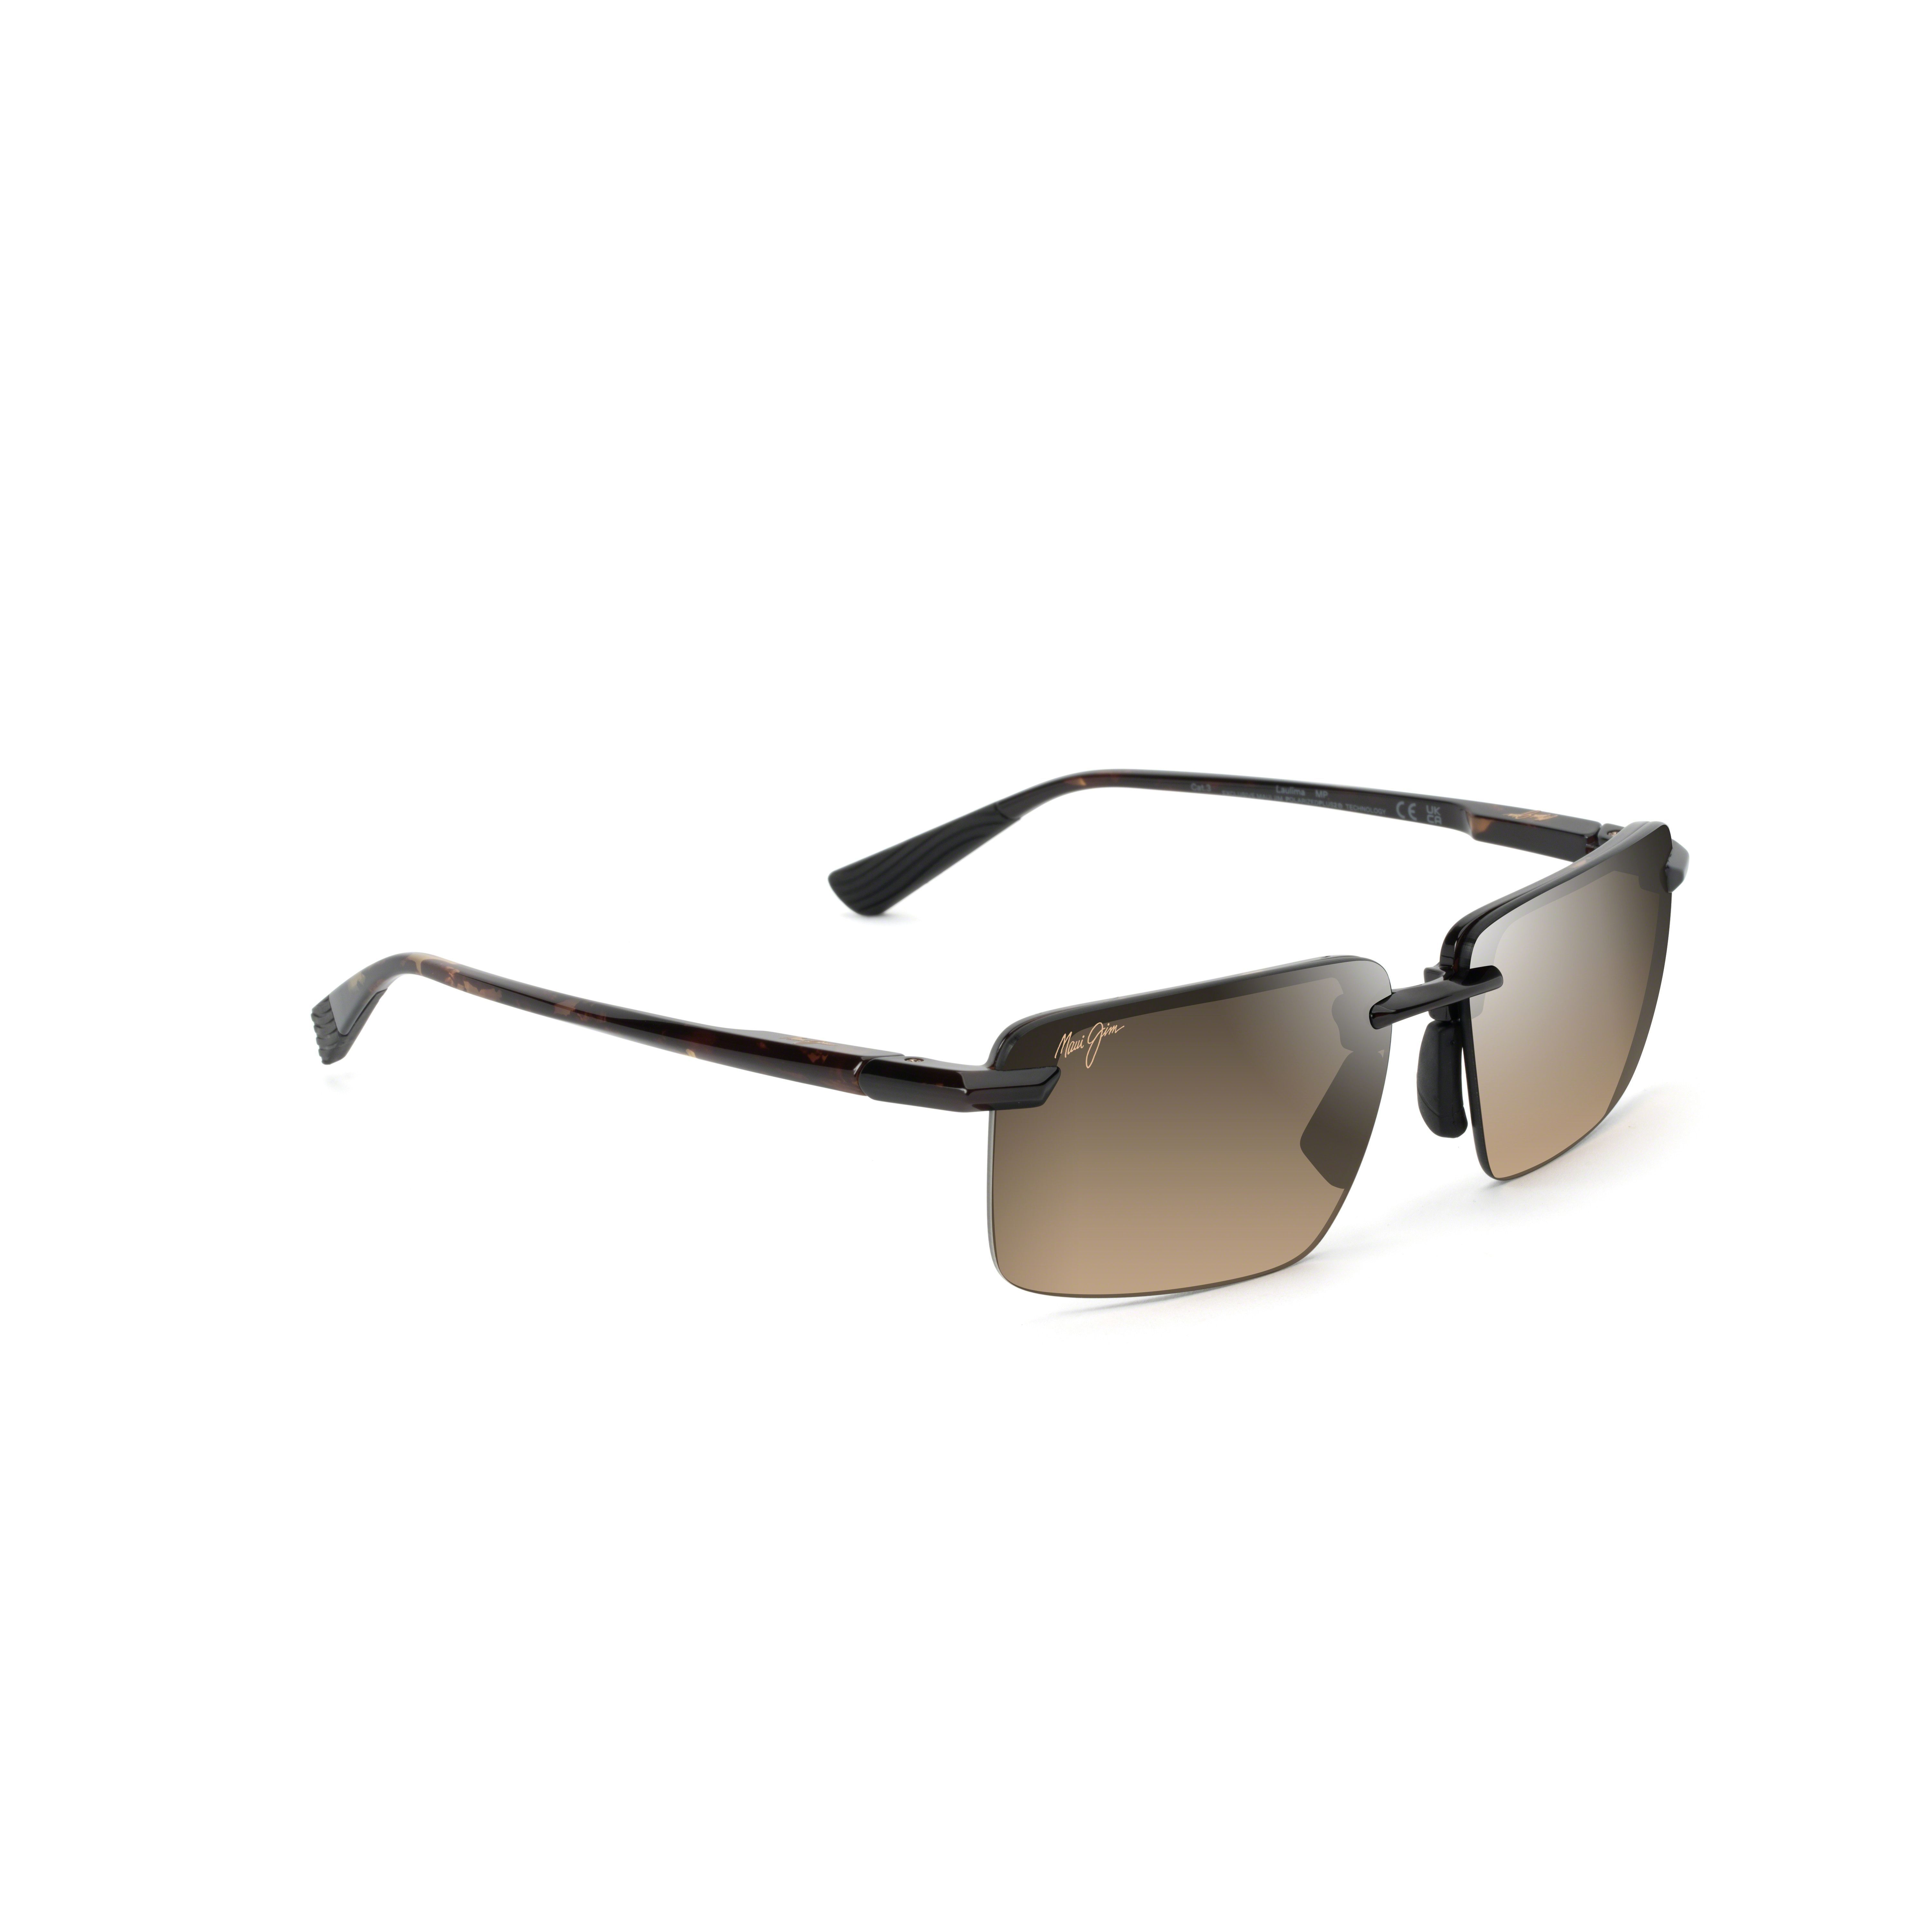 LAULIMA HS626 Rectangle Sunglasses 10A - size 61